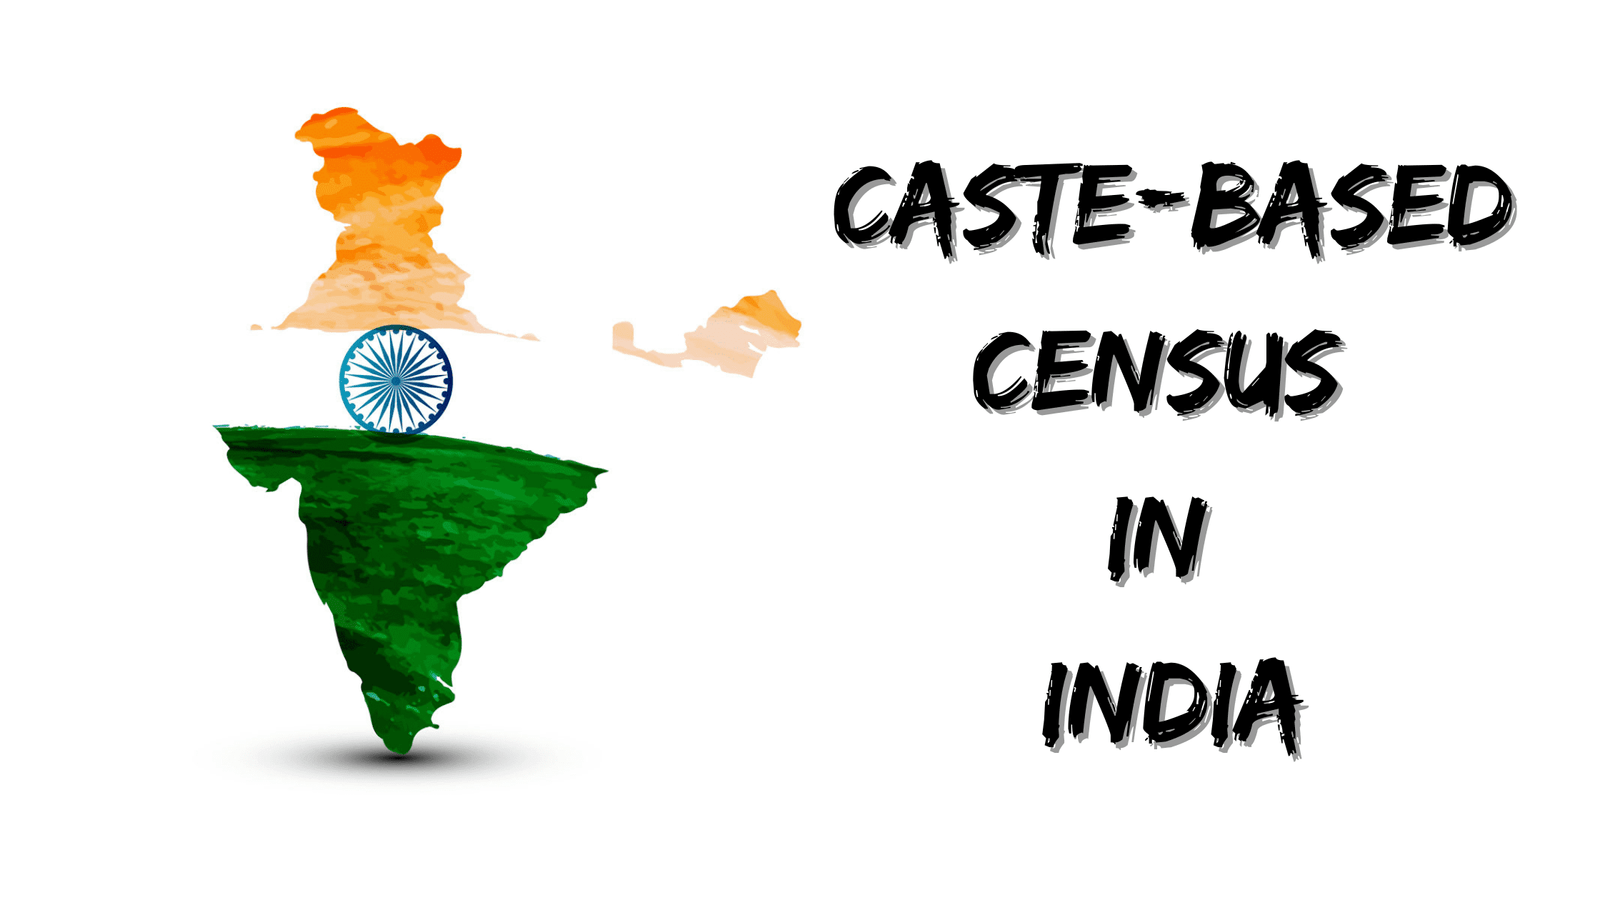 Caste based census in India